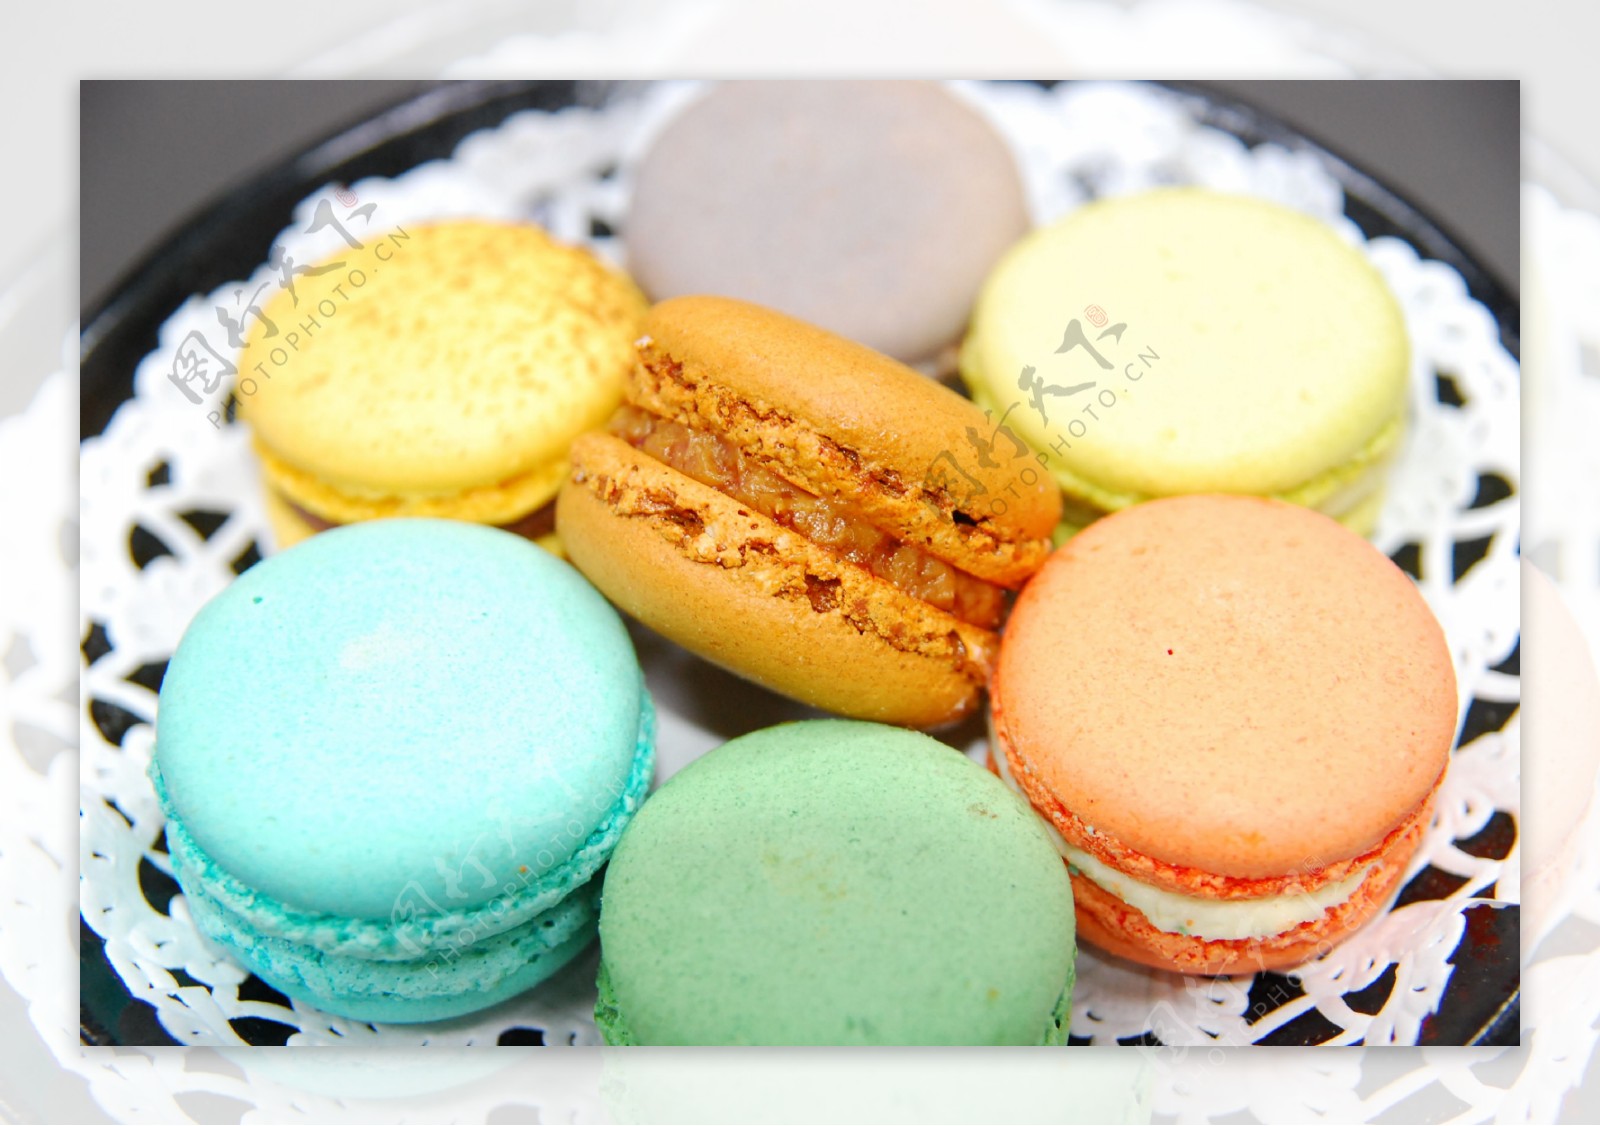 法式糕点马卡龙甜点礼盒装12枚-嘉禾食品生鲜专营店-爱奇艺商城